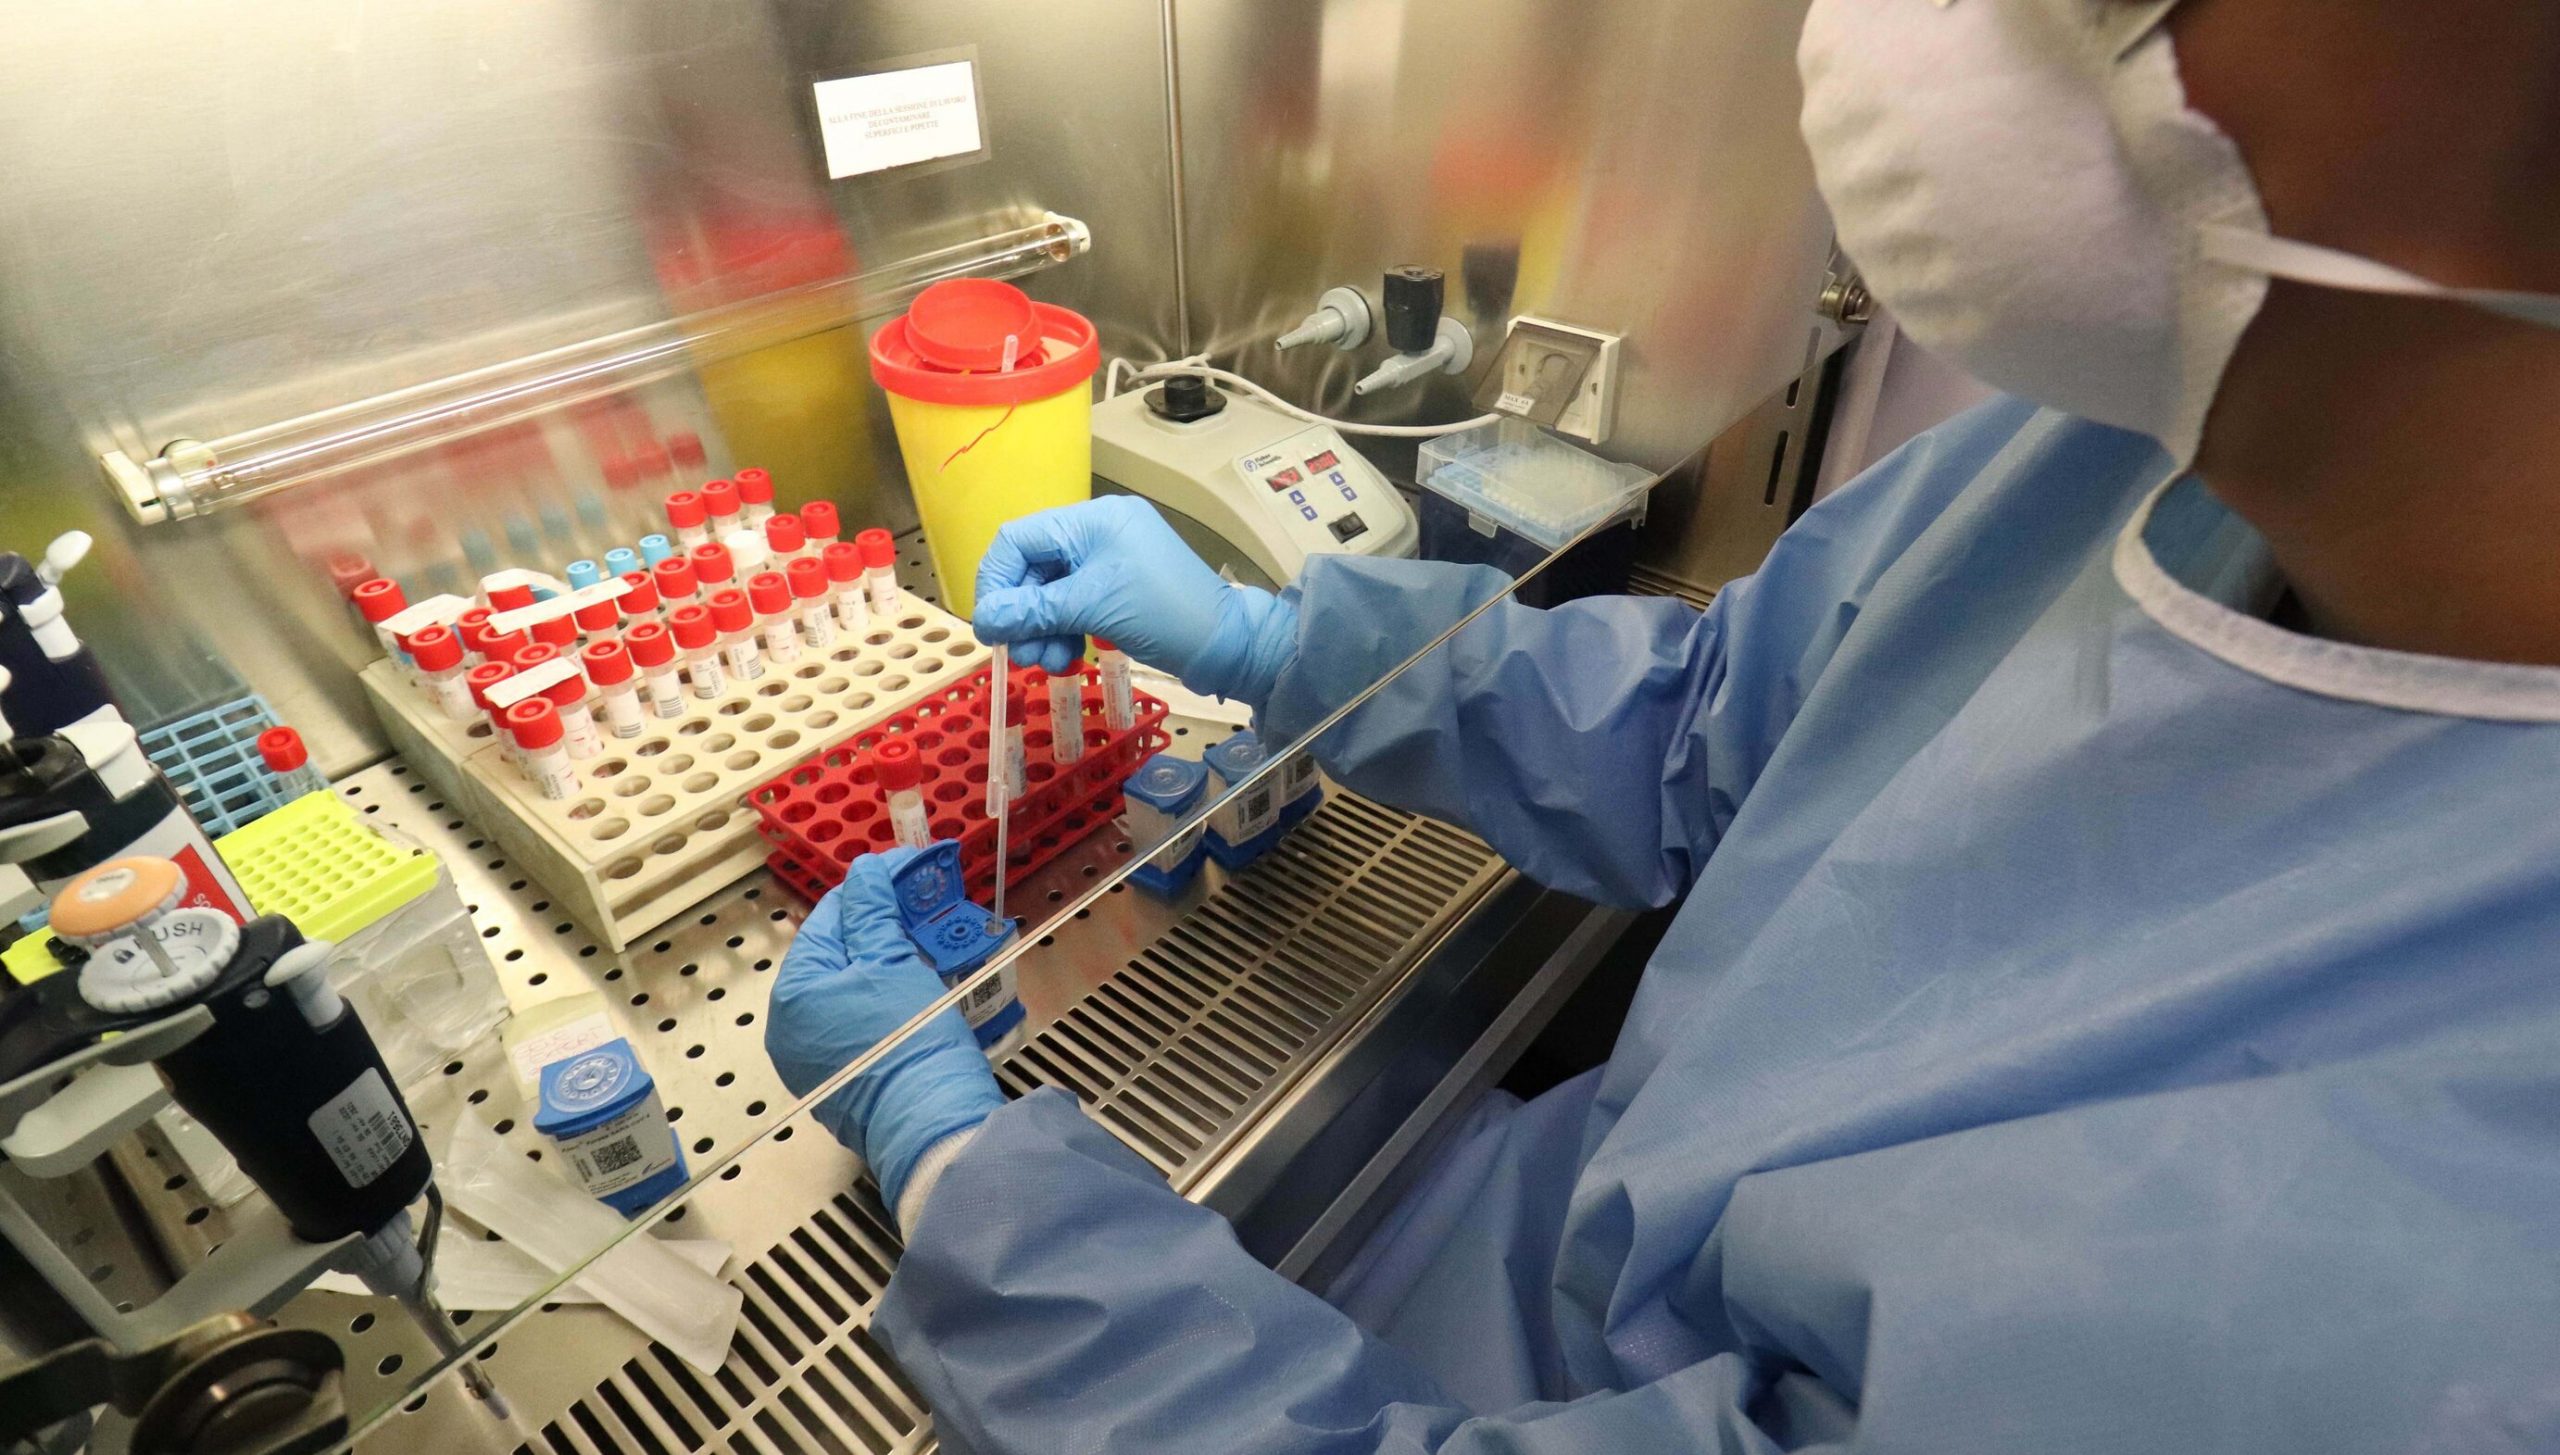 Noua variantă SARS-Cov-2, identificată în Franța, este dificil de detectat cu ajutorul testelor RT-PCR